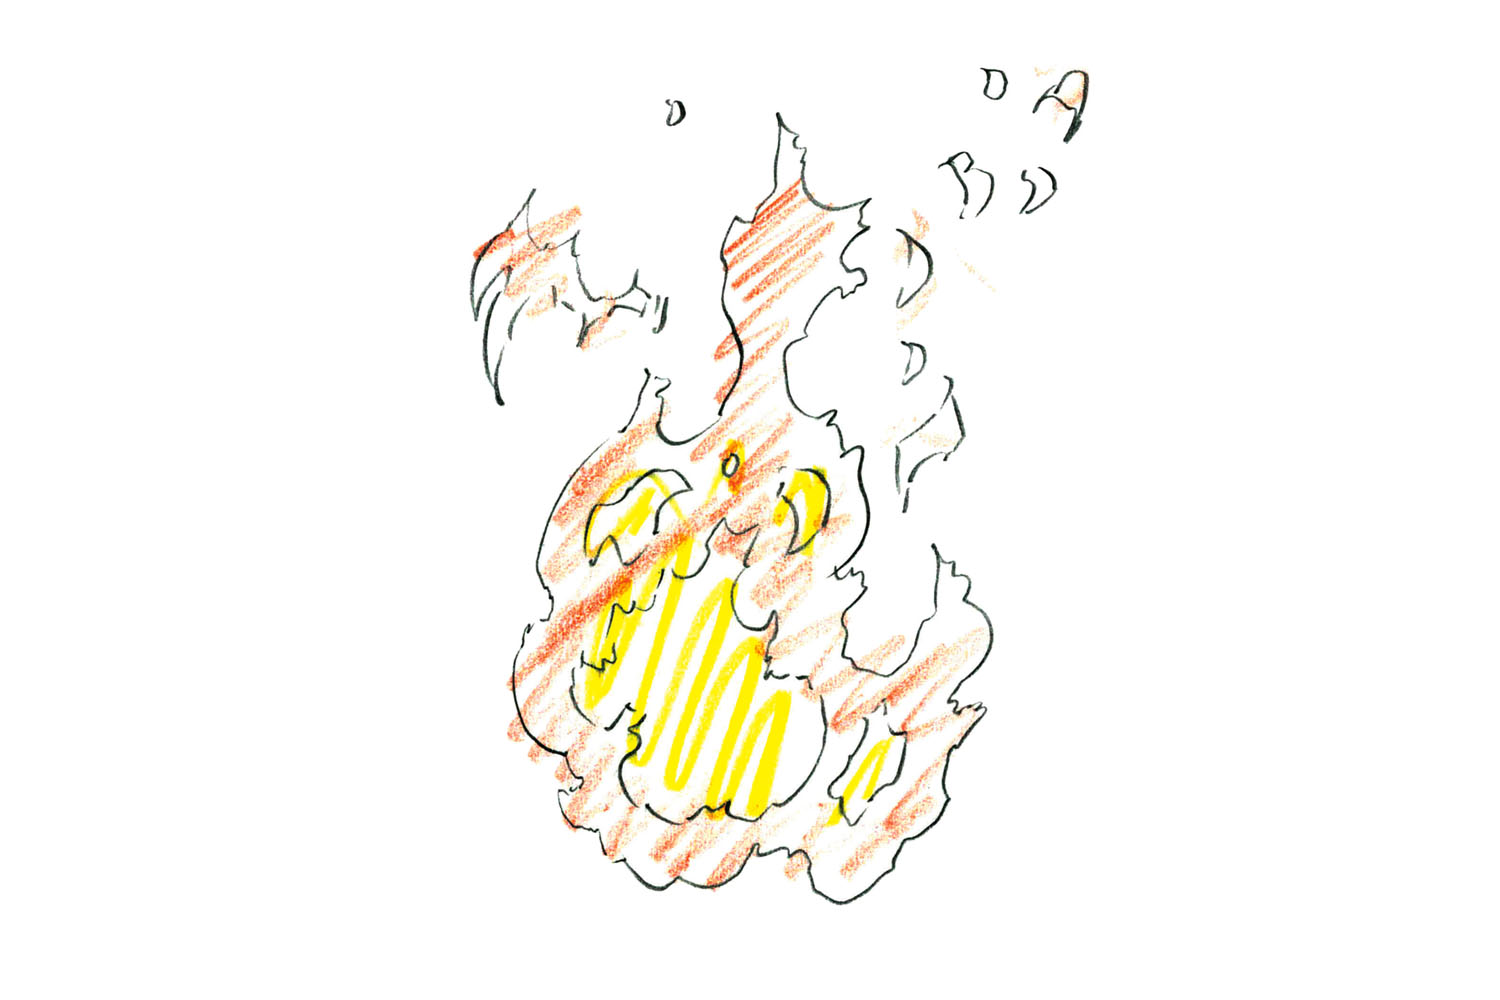 アニメーター小澤和則のエフェクト作画のテクニック 炎の動き を自然に表現する方法 アニメーションのエフェクト作画テクニック 第1回 Pictures